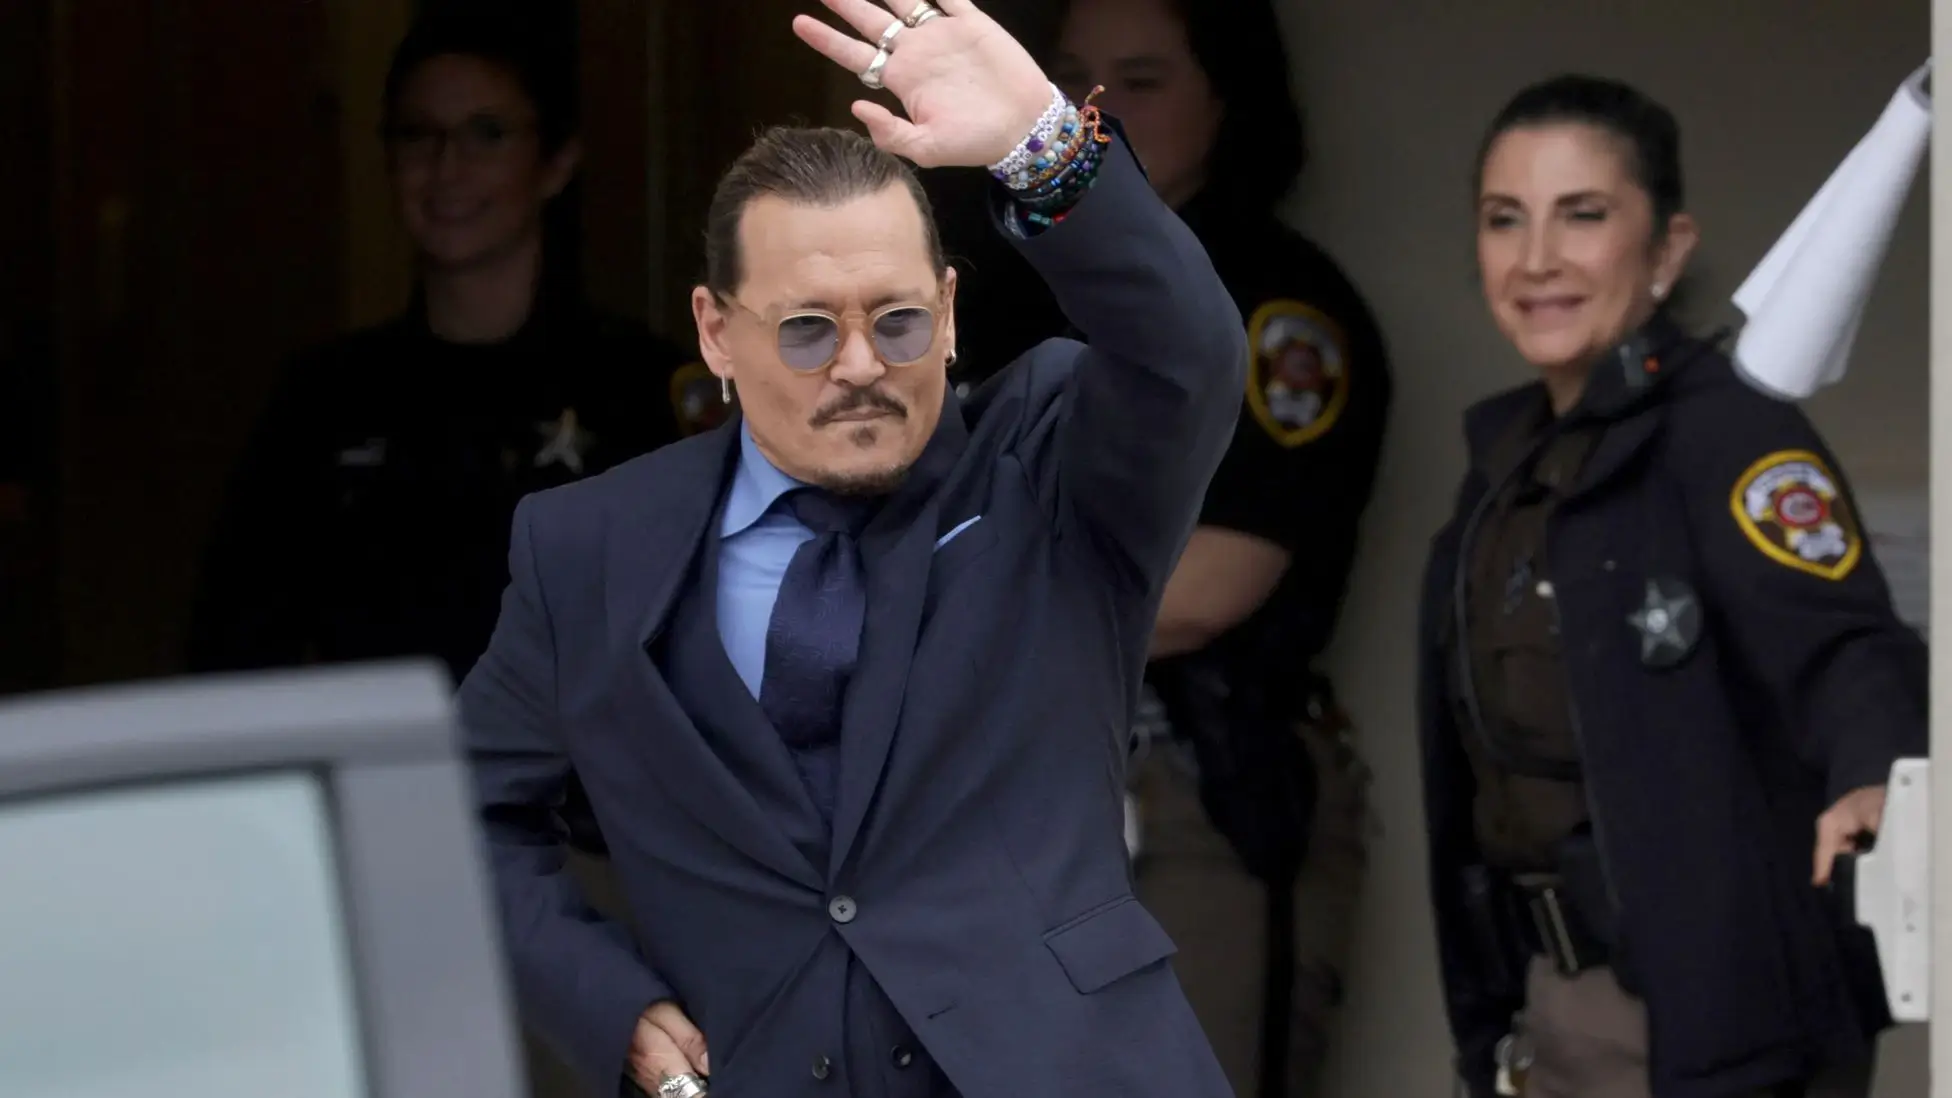 Johnny Depp won the defamation trial